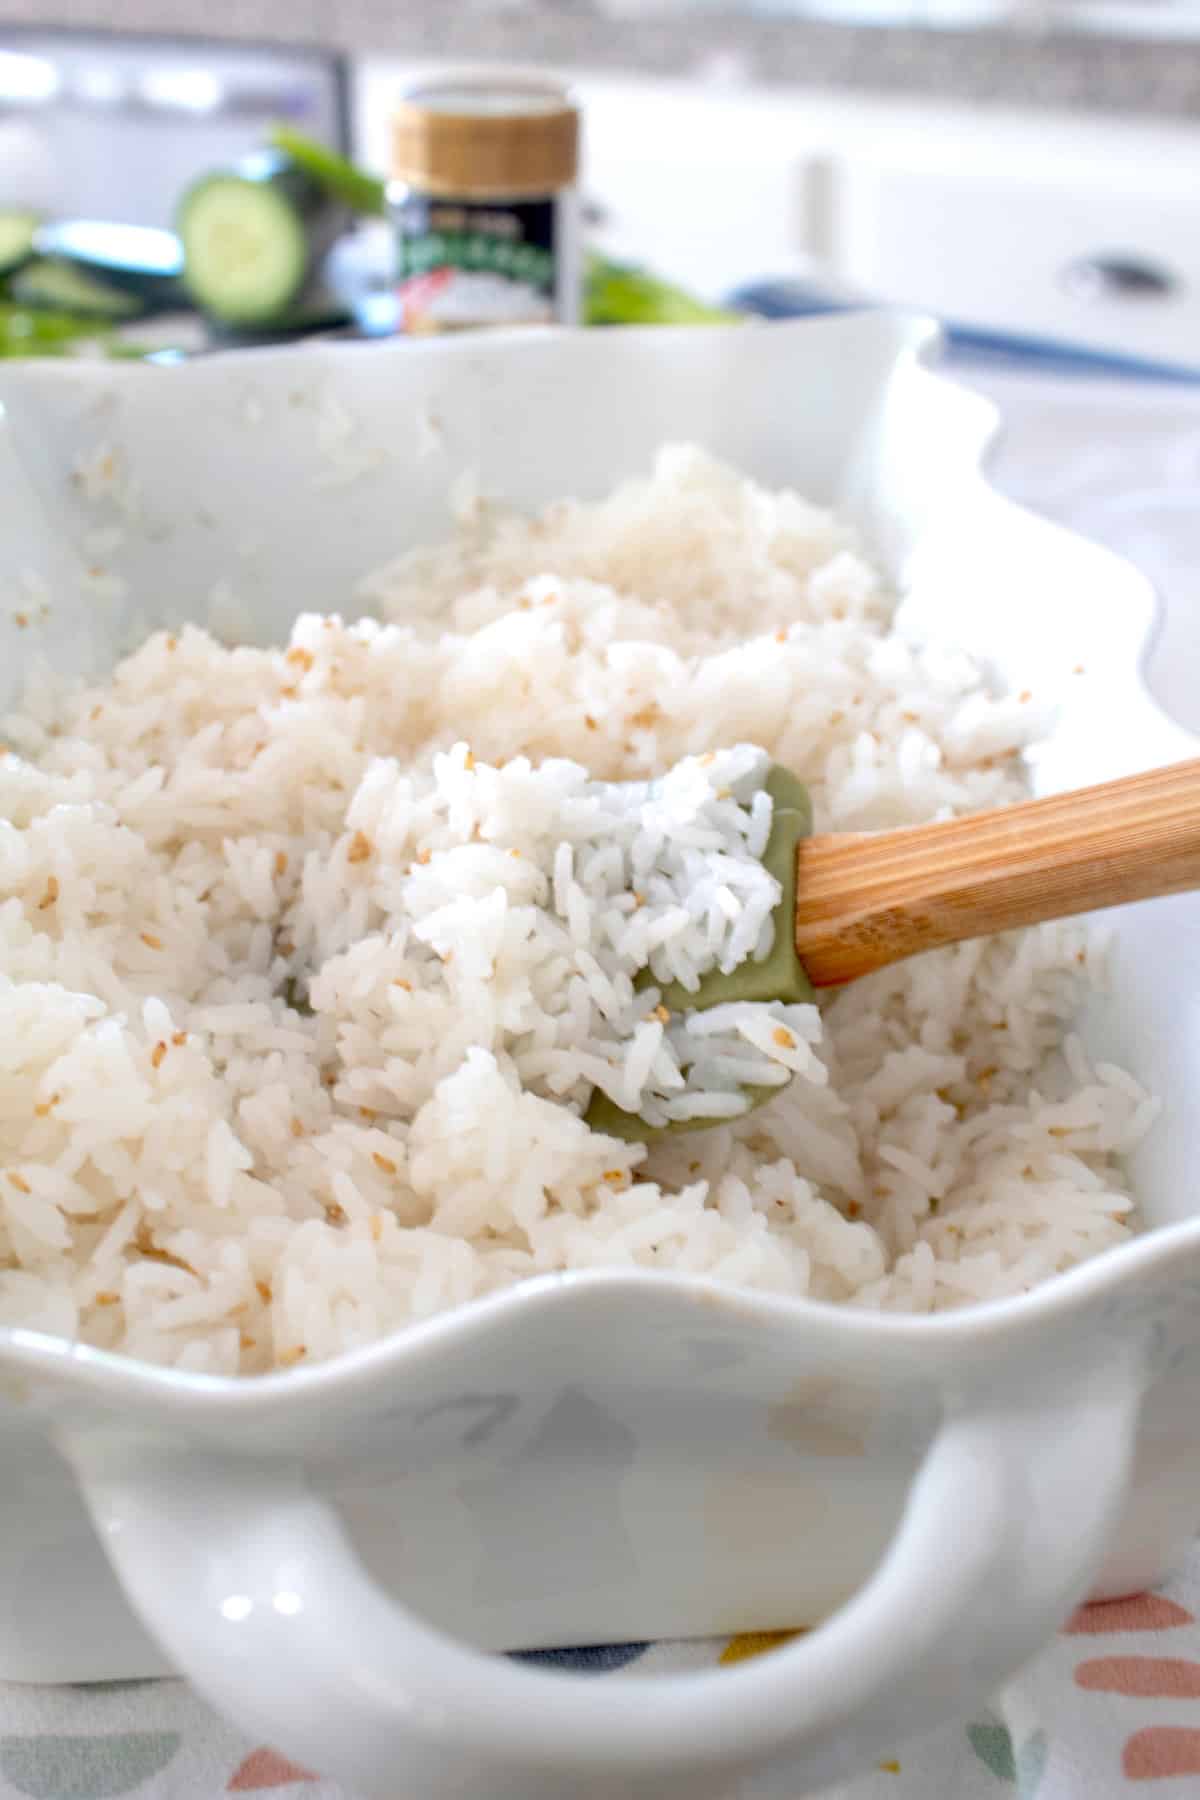 sushi rice in a casserole dish